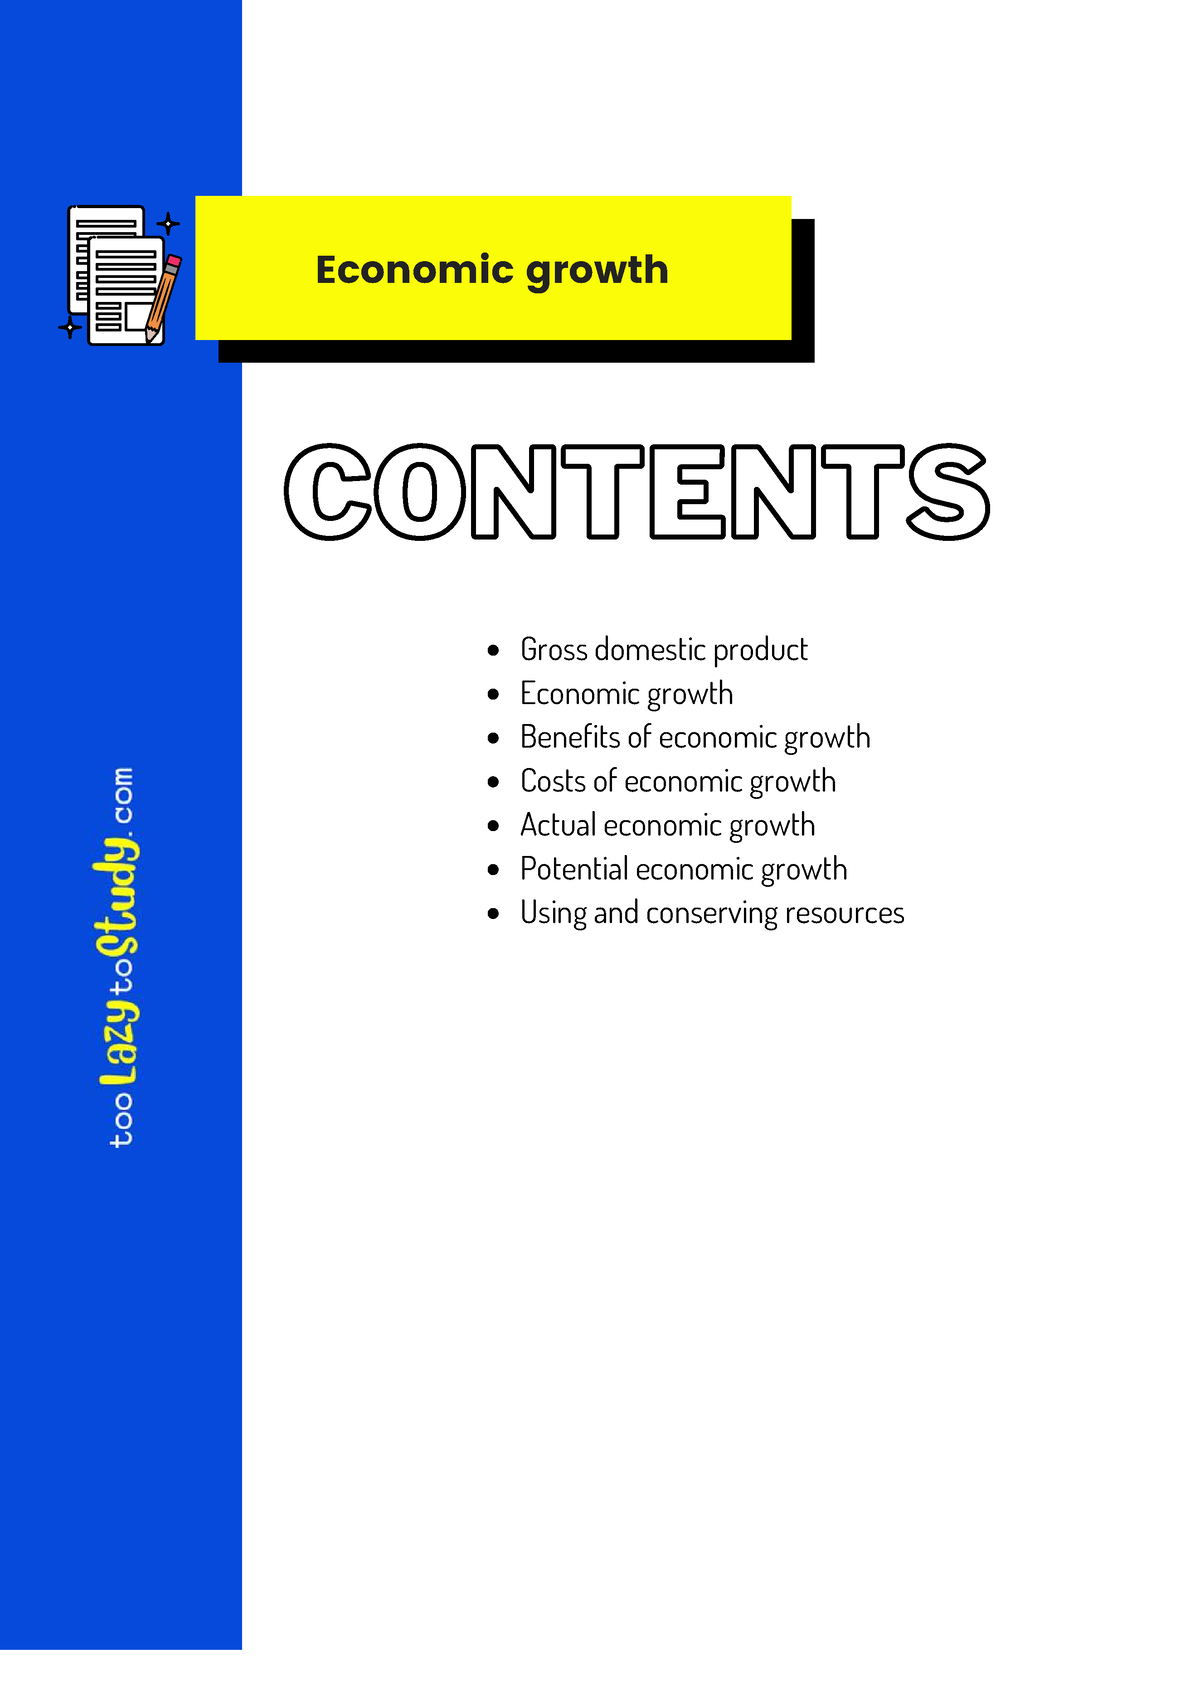 advantages of economic growth